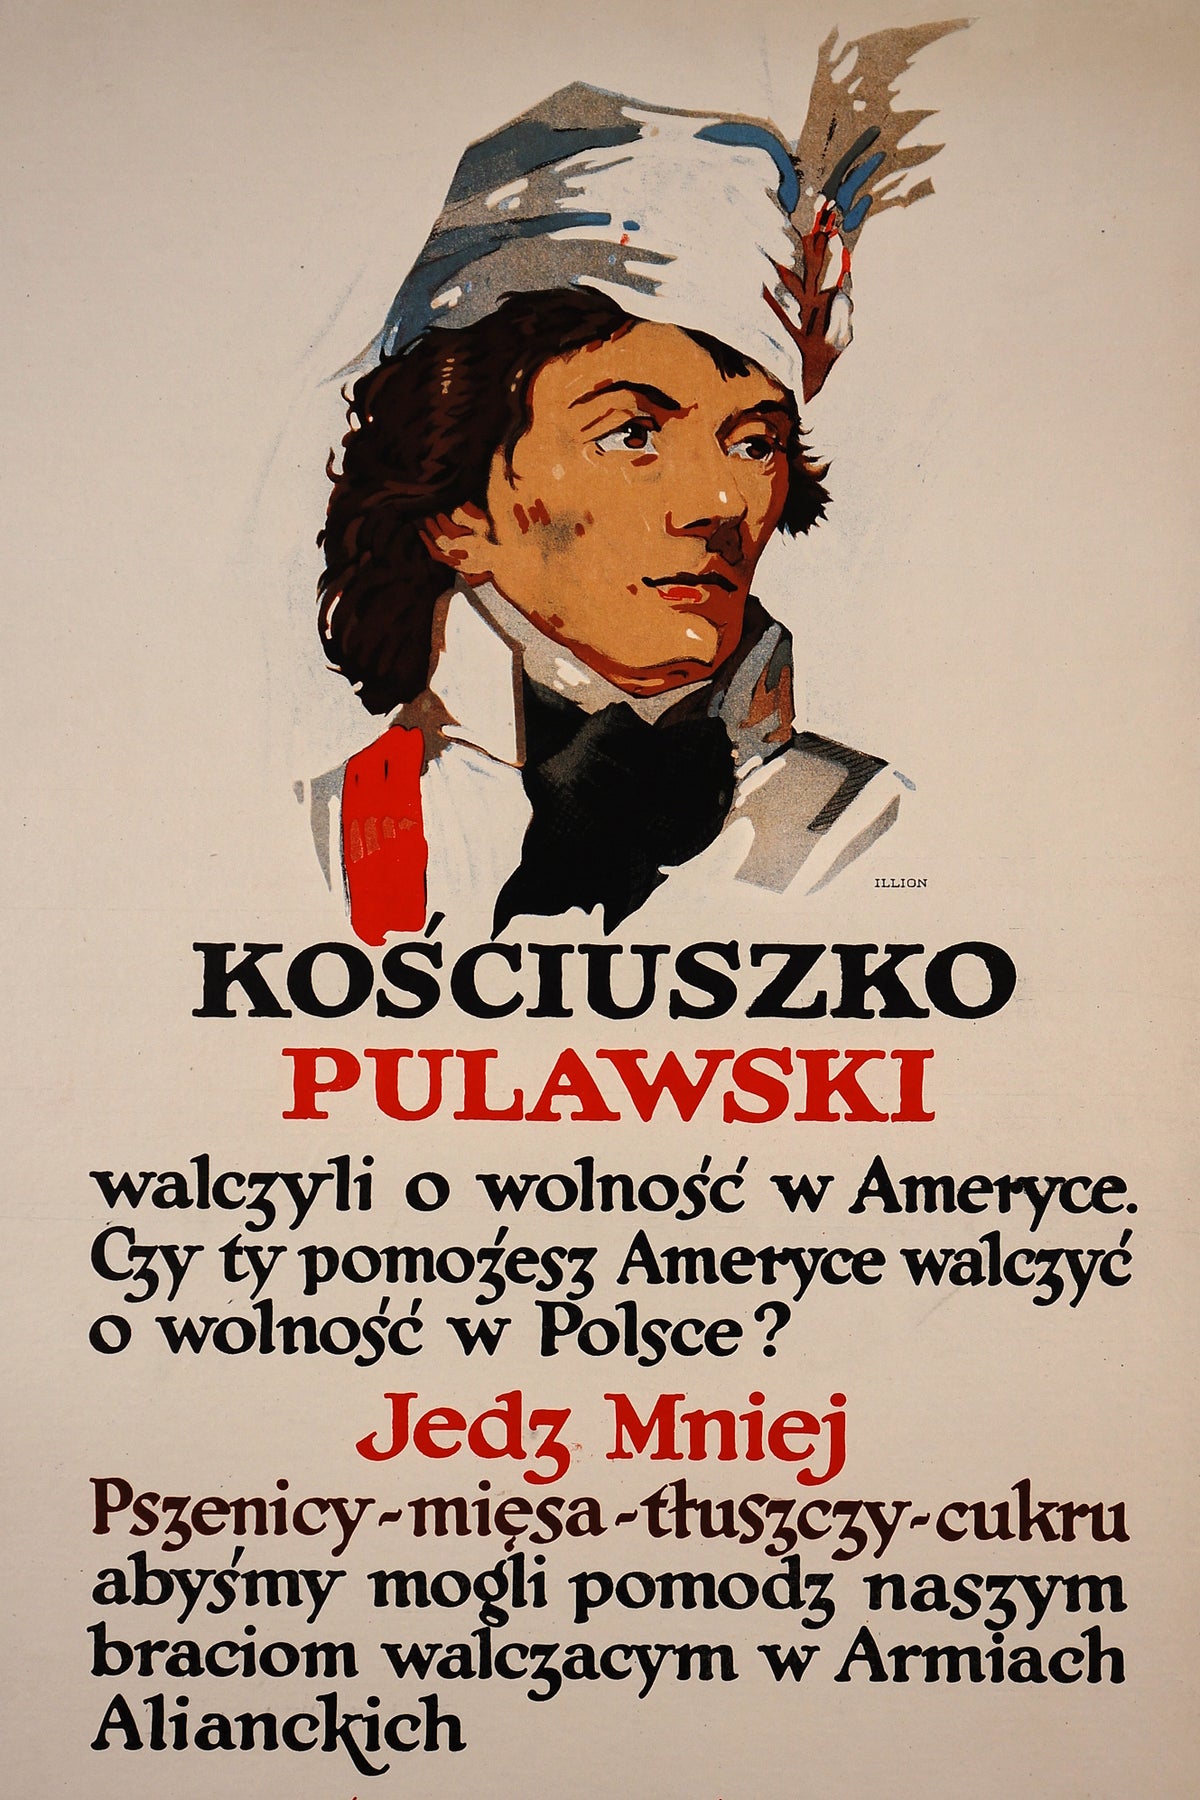 Kosciuszko/Pulawski - Authentic Vintage Poster